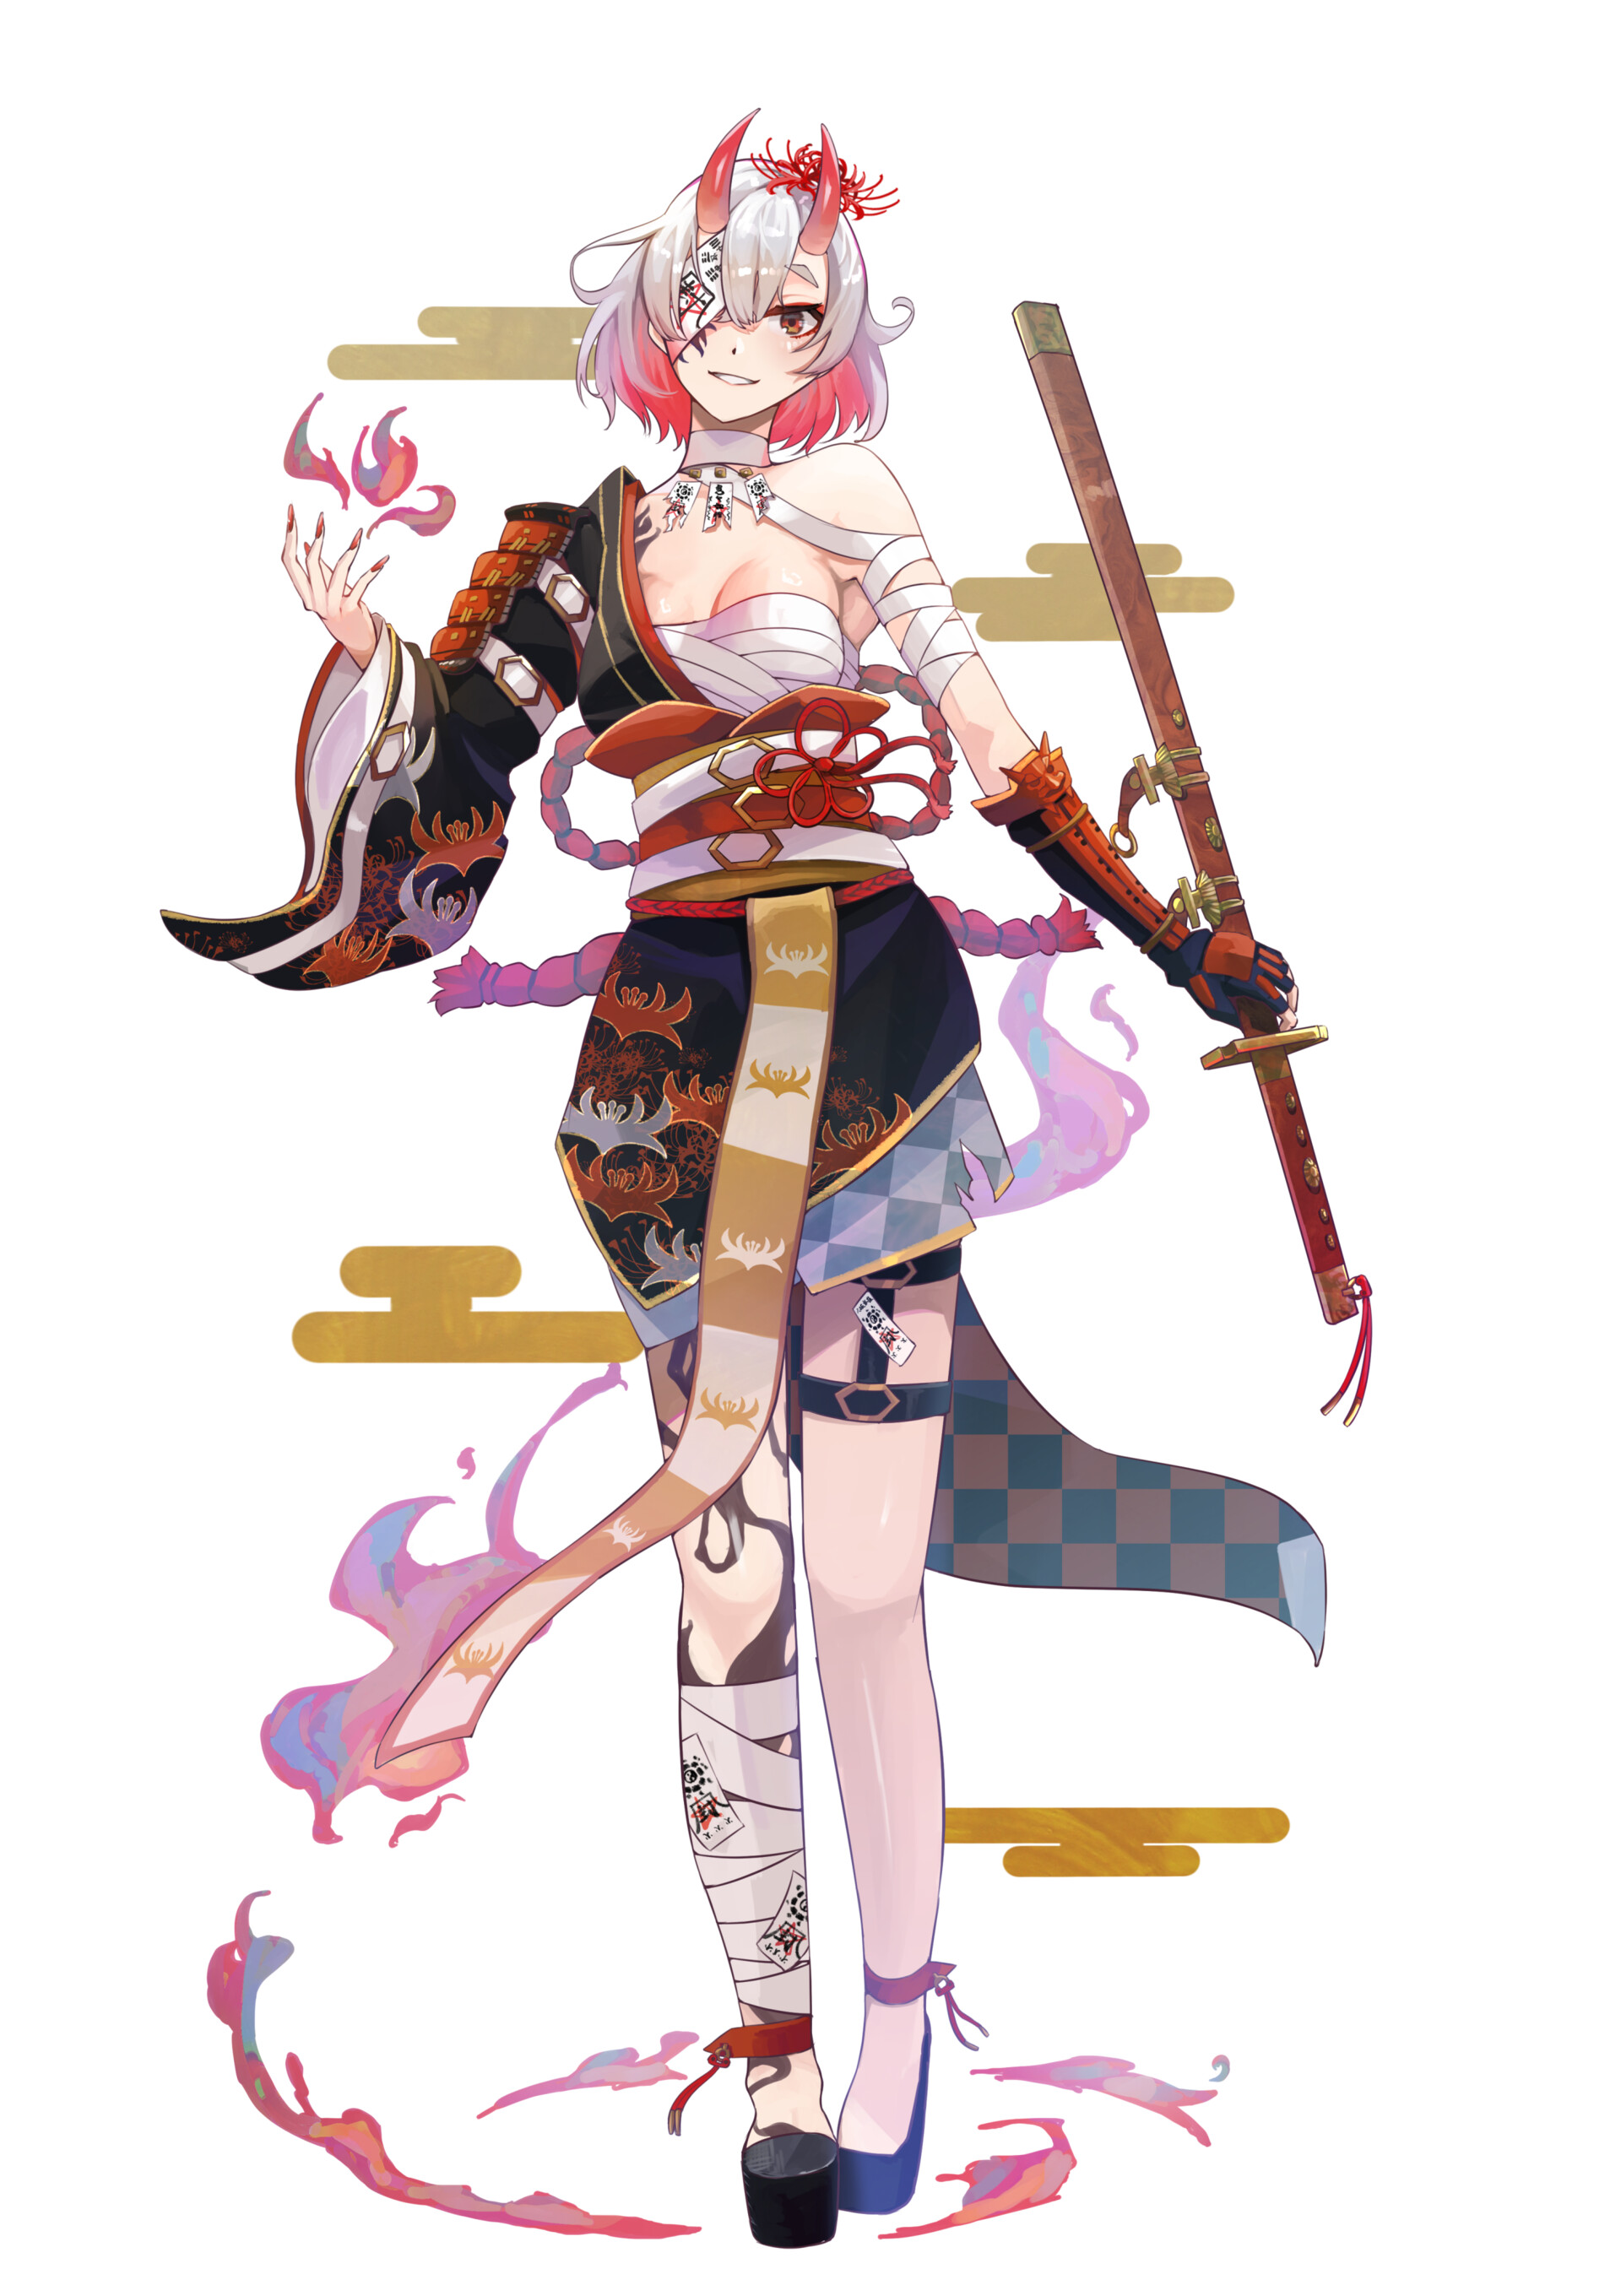 ArtStation - Oni girl character design